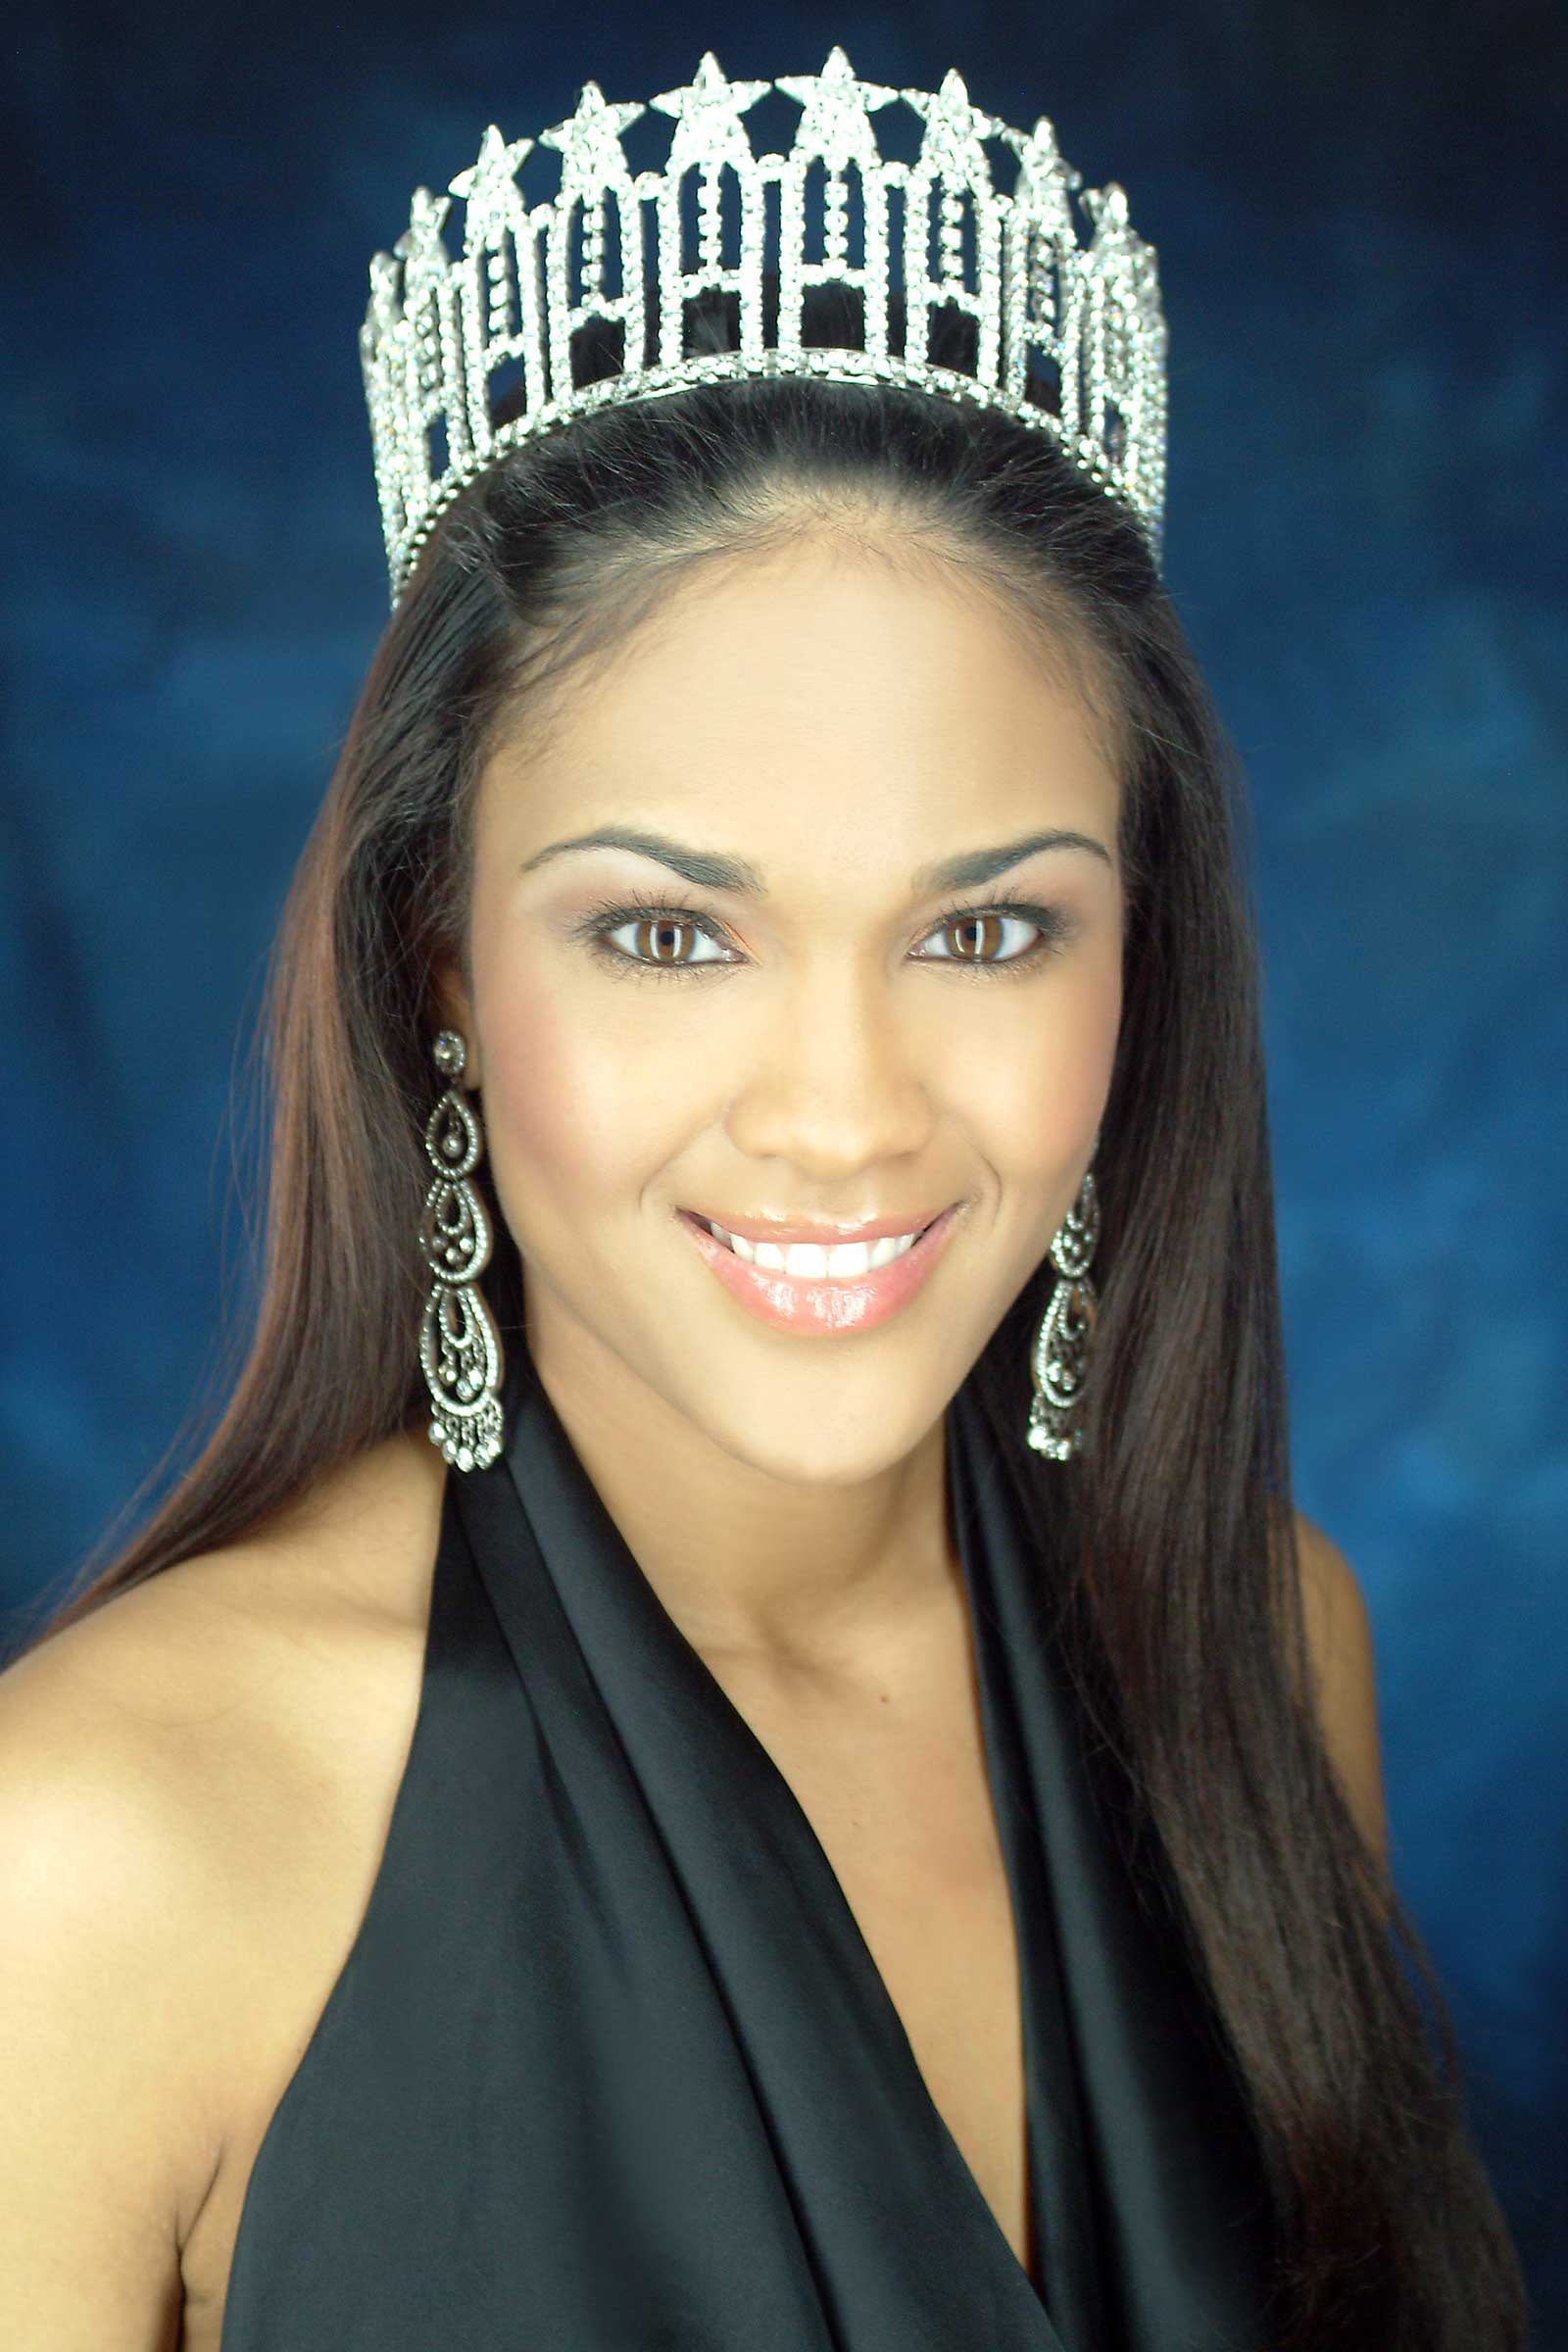 Miss Louisiana USA